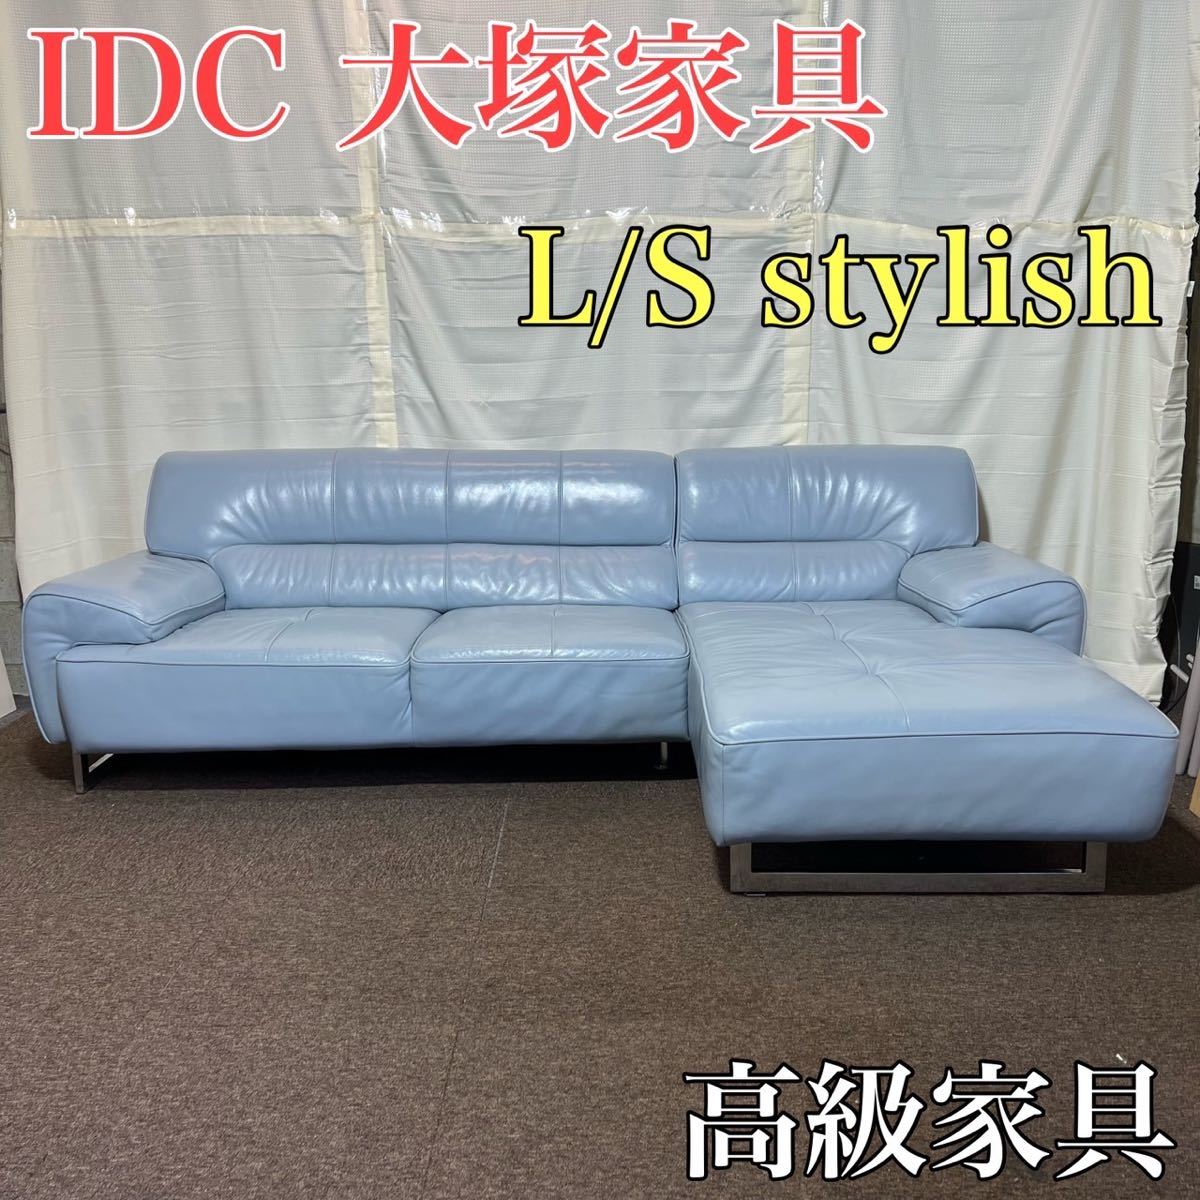 IDC 大塚家具 ソファ L/S stylish37 カウチ 高級家具 A0251